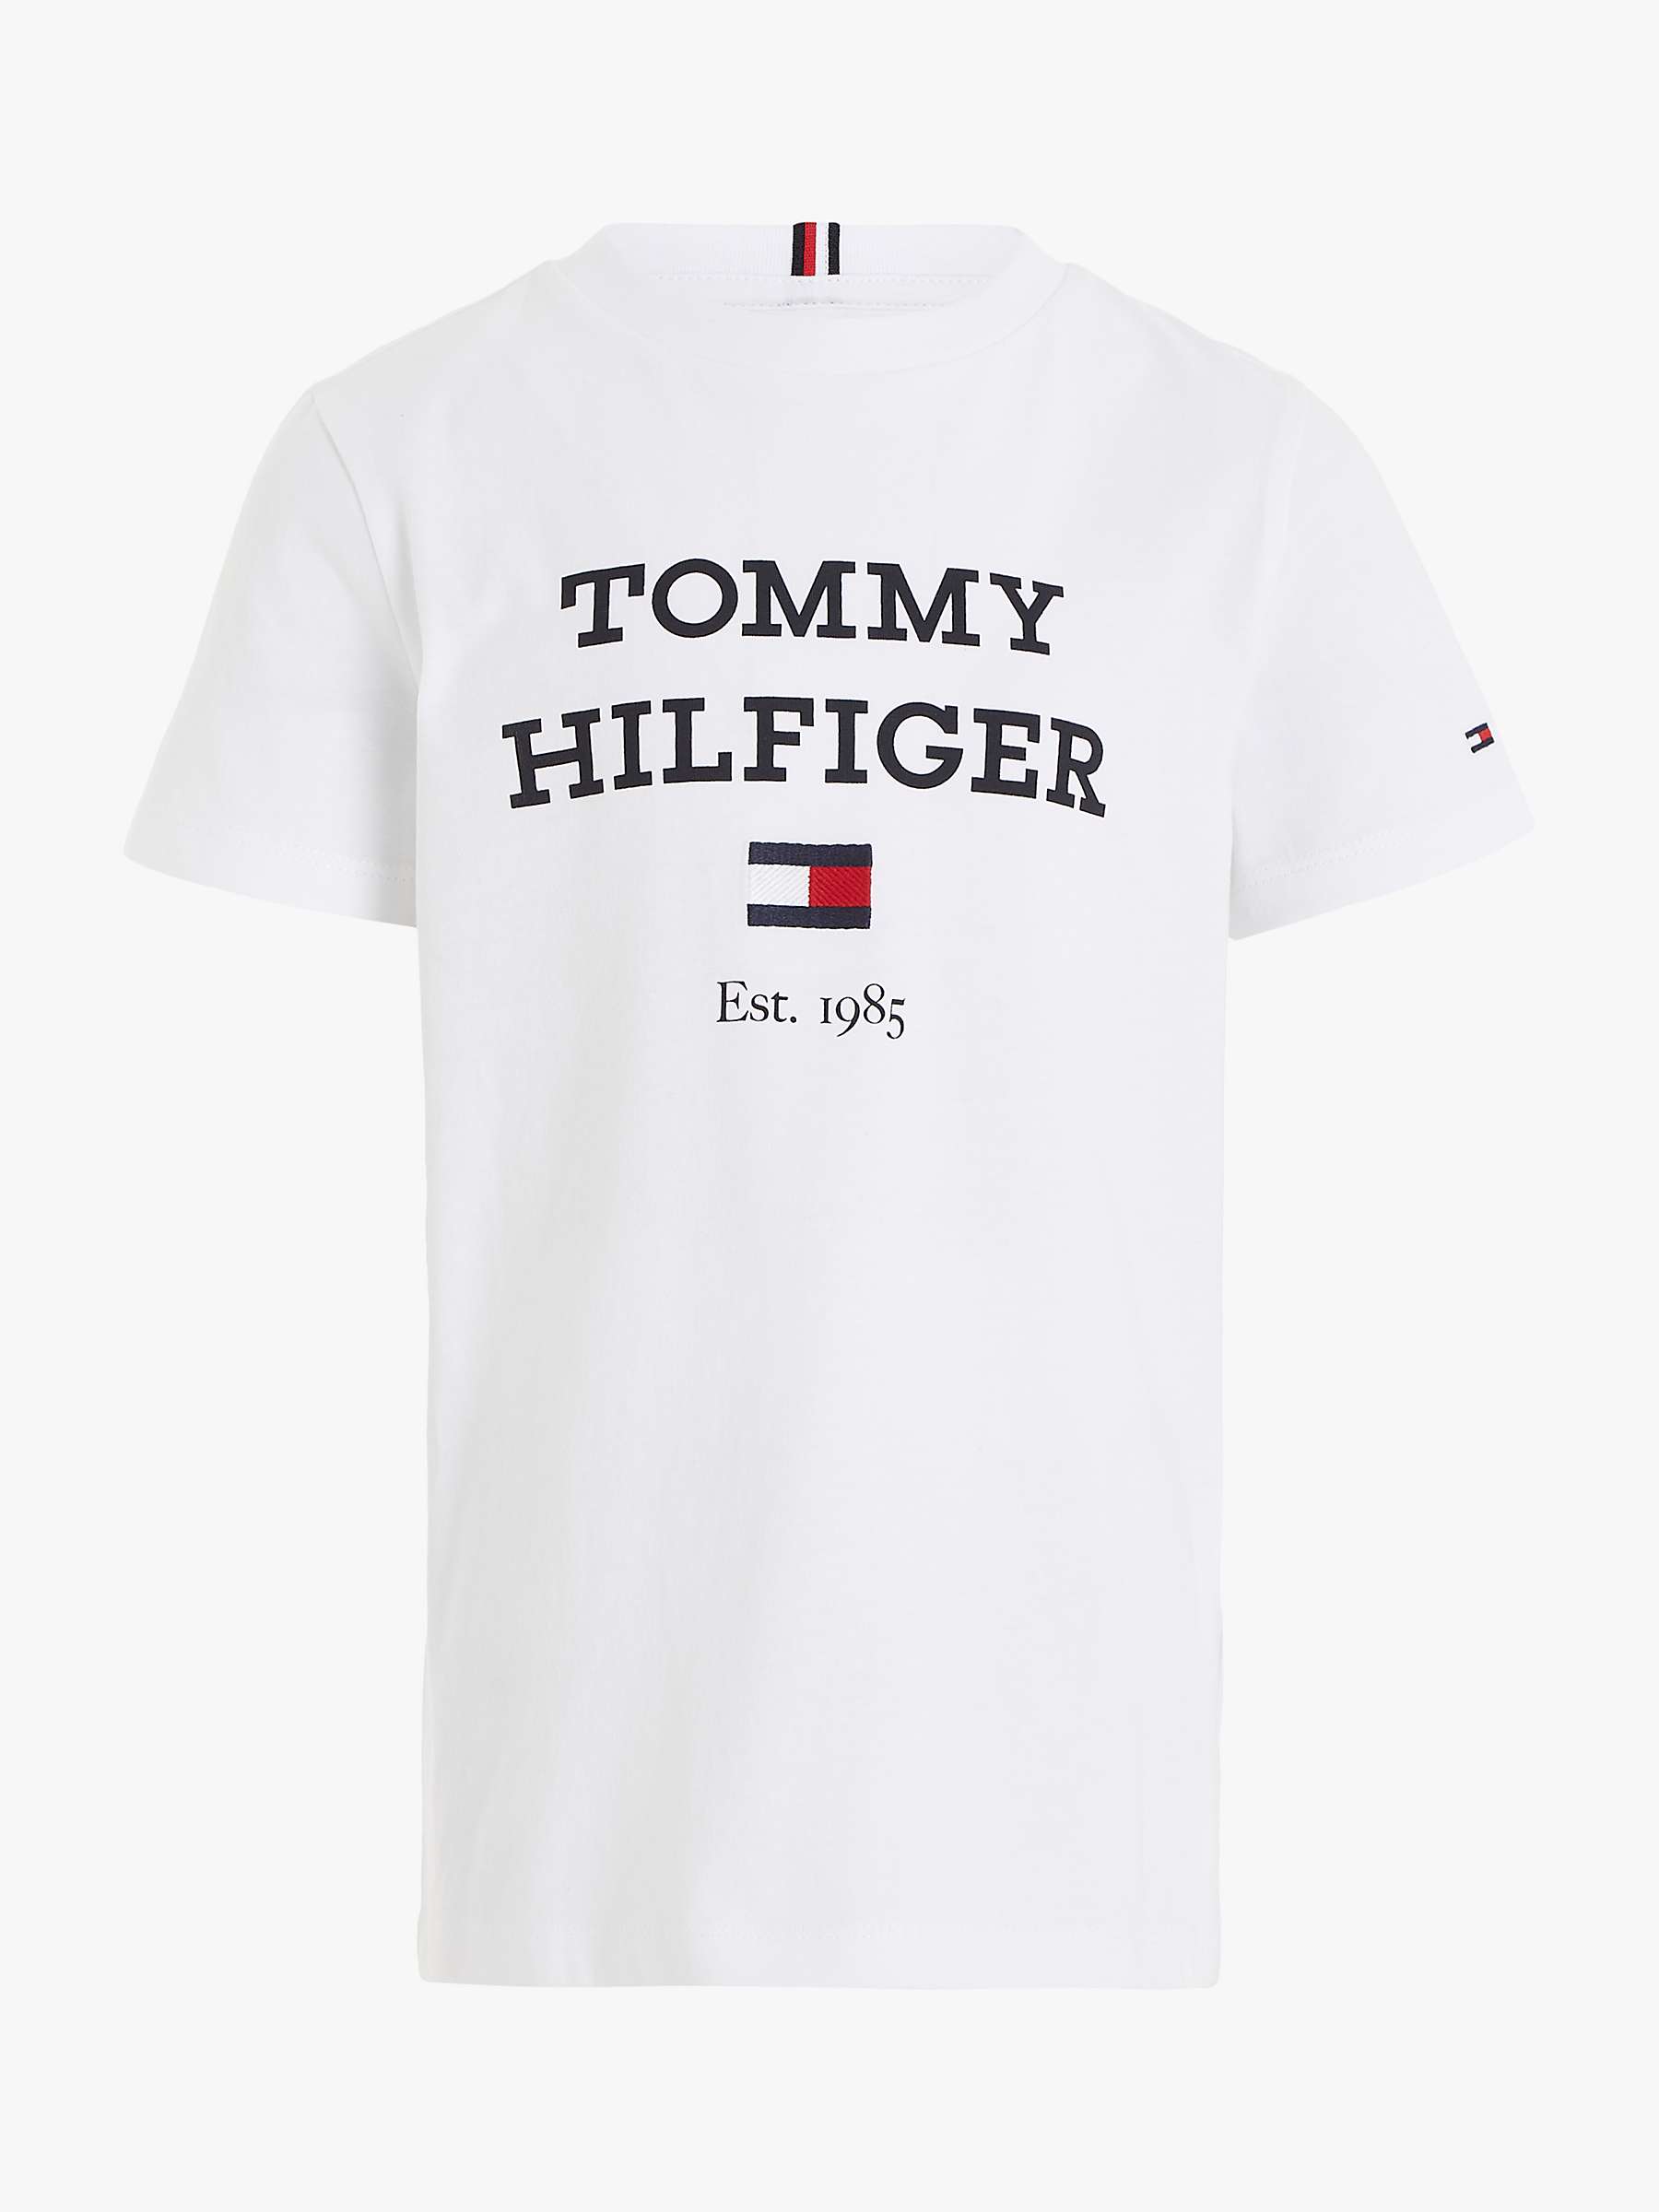 Buy Tommy Hilfiger Kids' Logo Short Sleeve T-Shirt Online at johnlewis.com